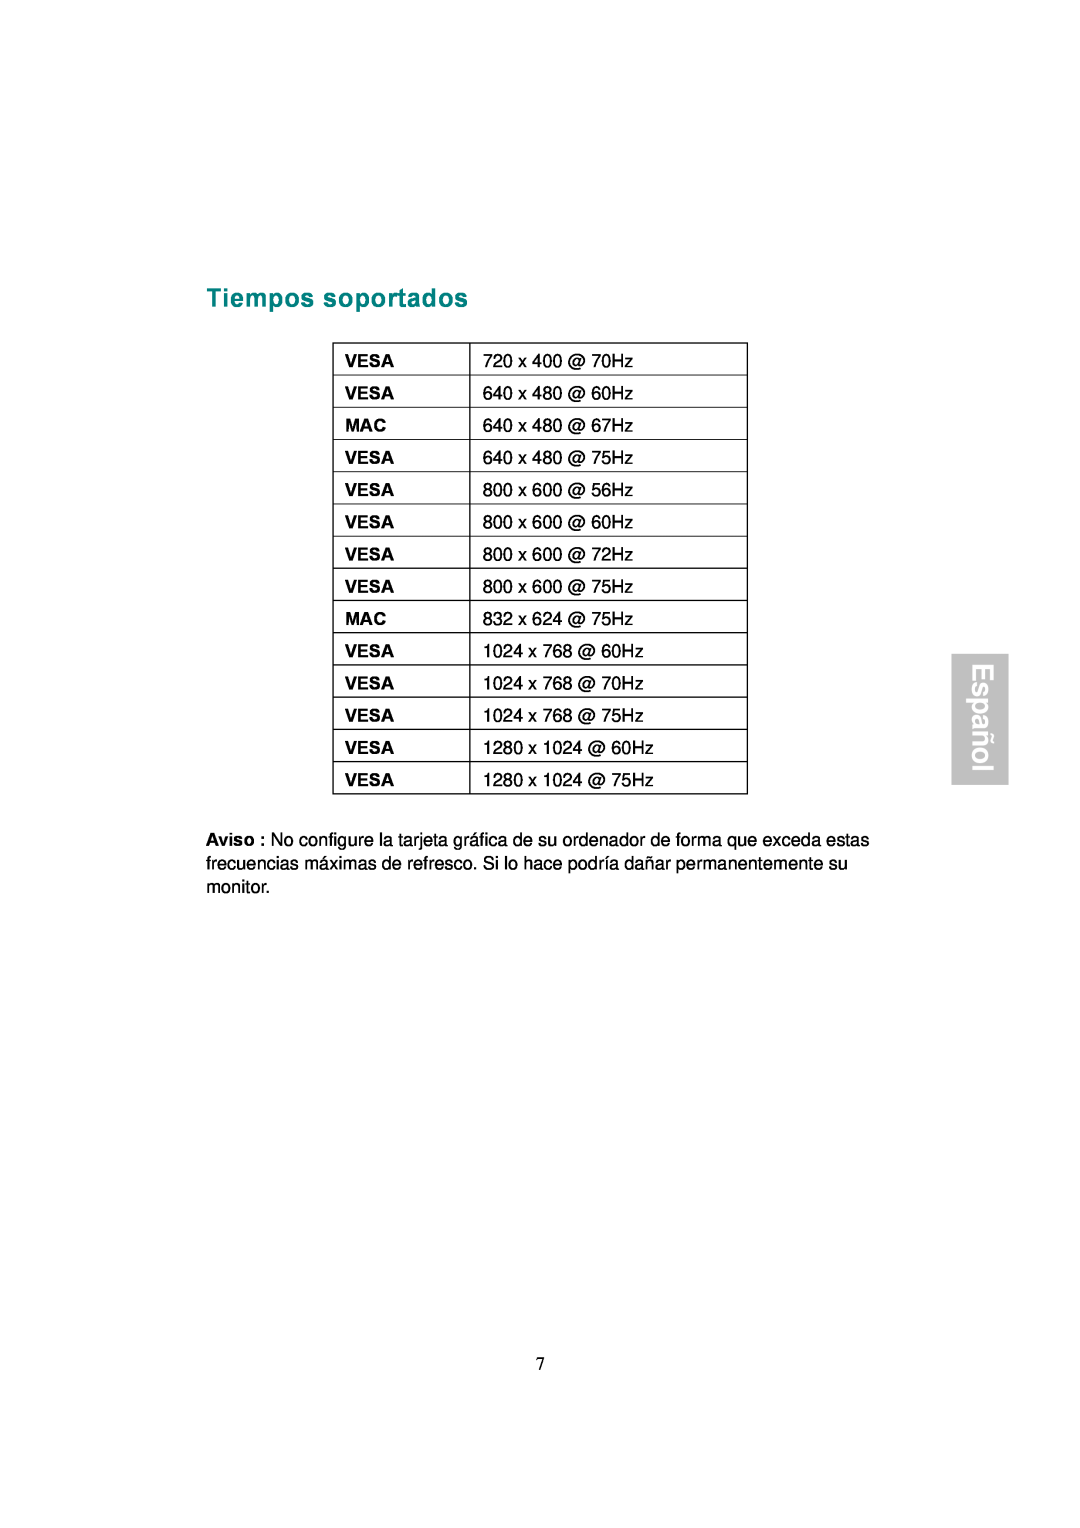 AOC 177S manual Tiempos soportados, Español 